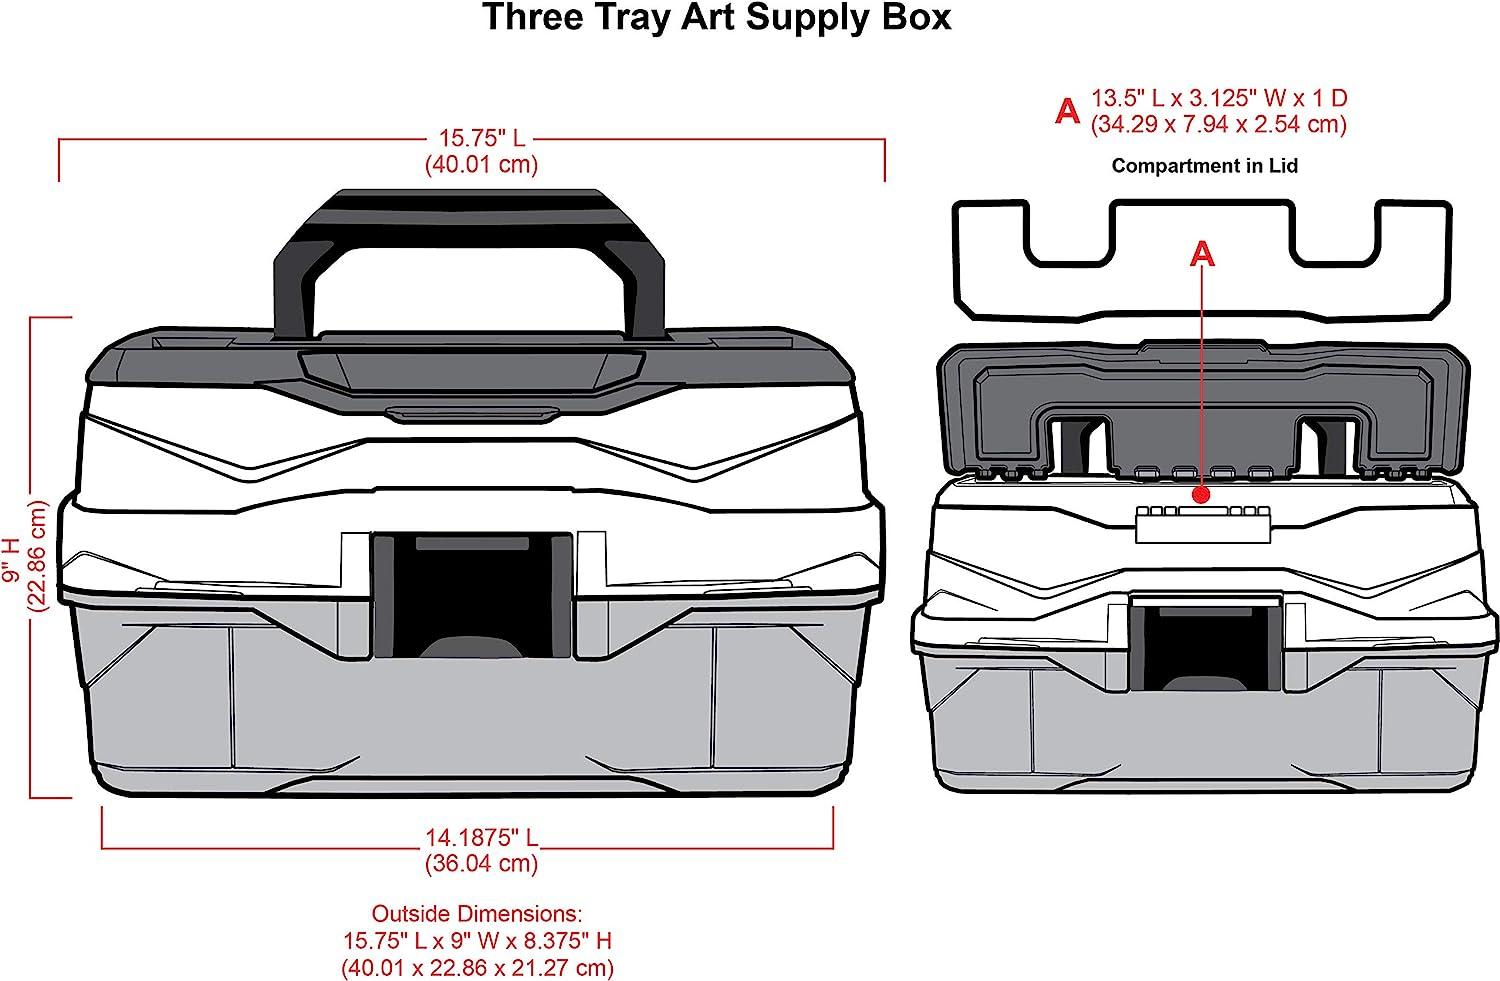  ArtBin Three Tray Art Supply Box